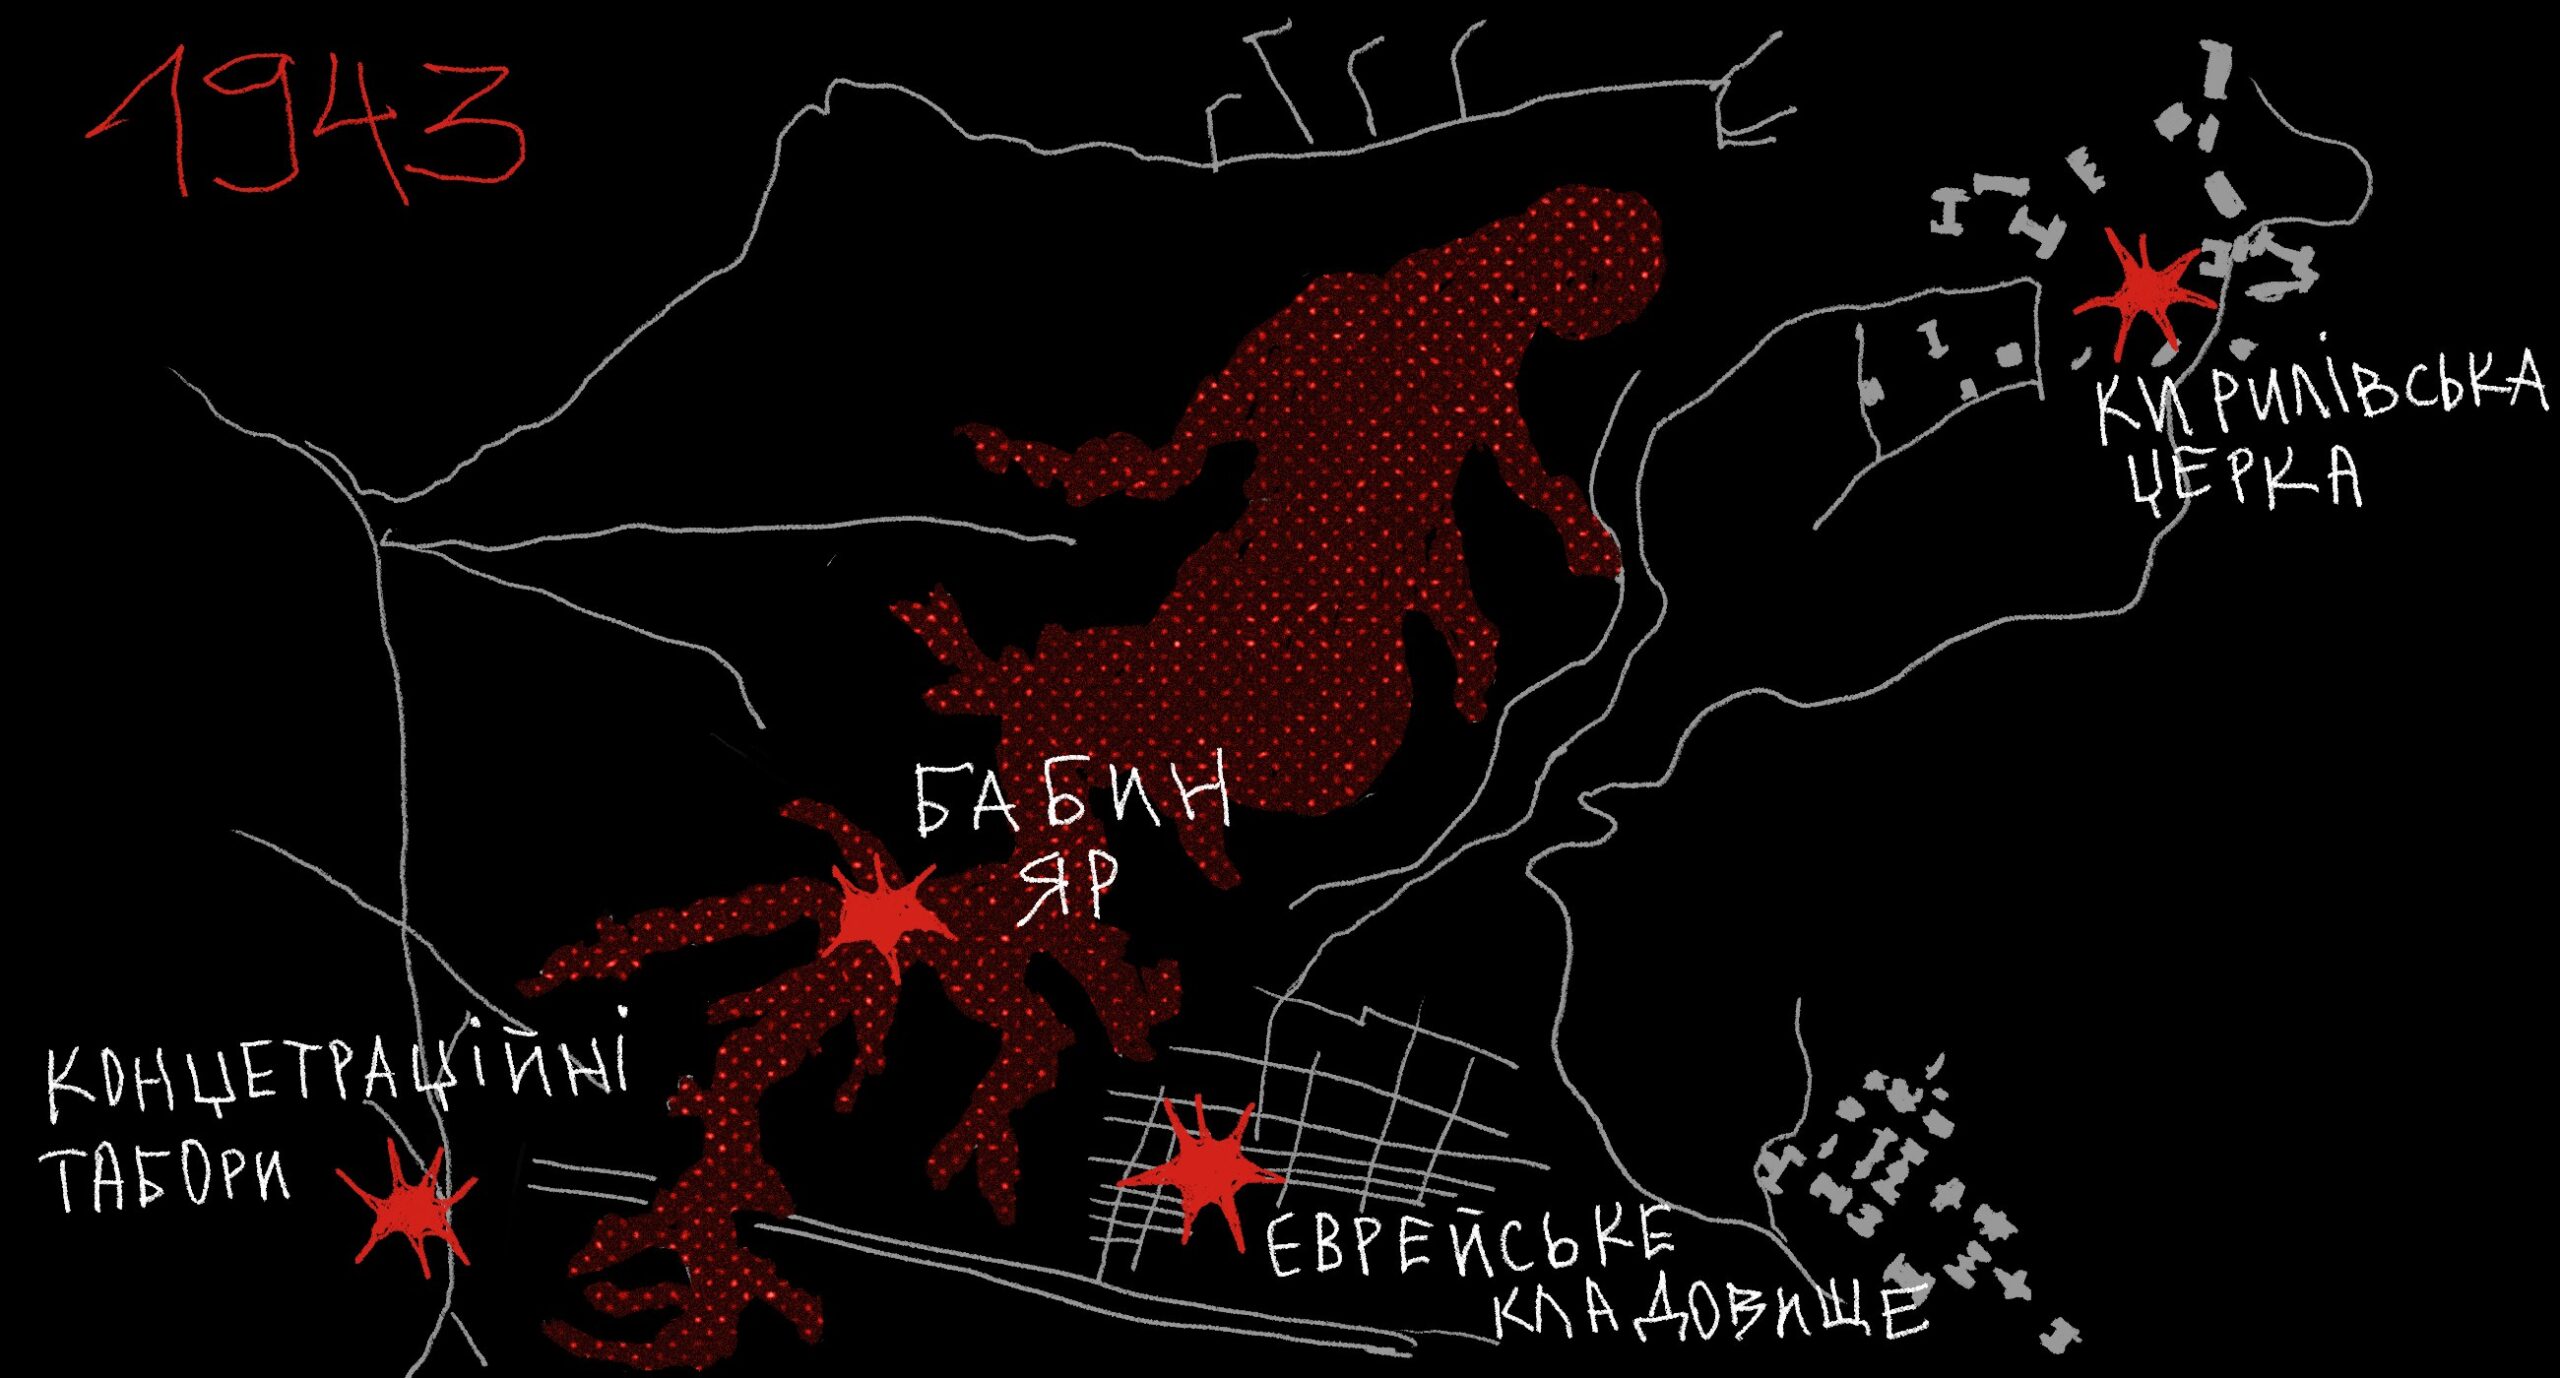 бабин яр 1943 карта мапа голокост